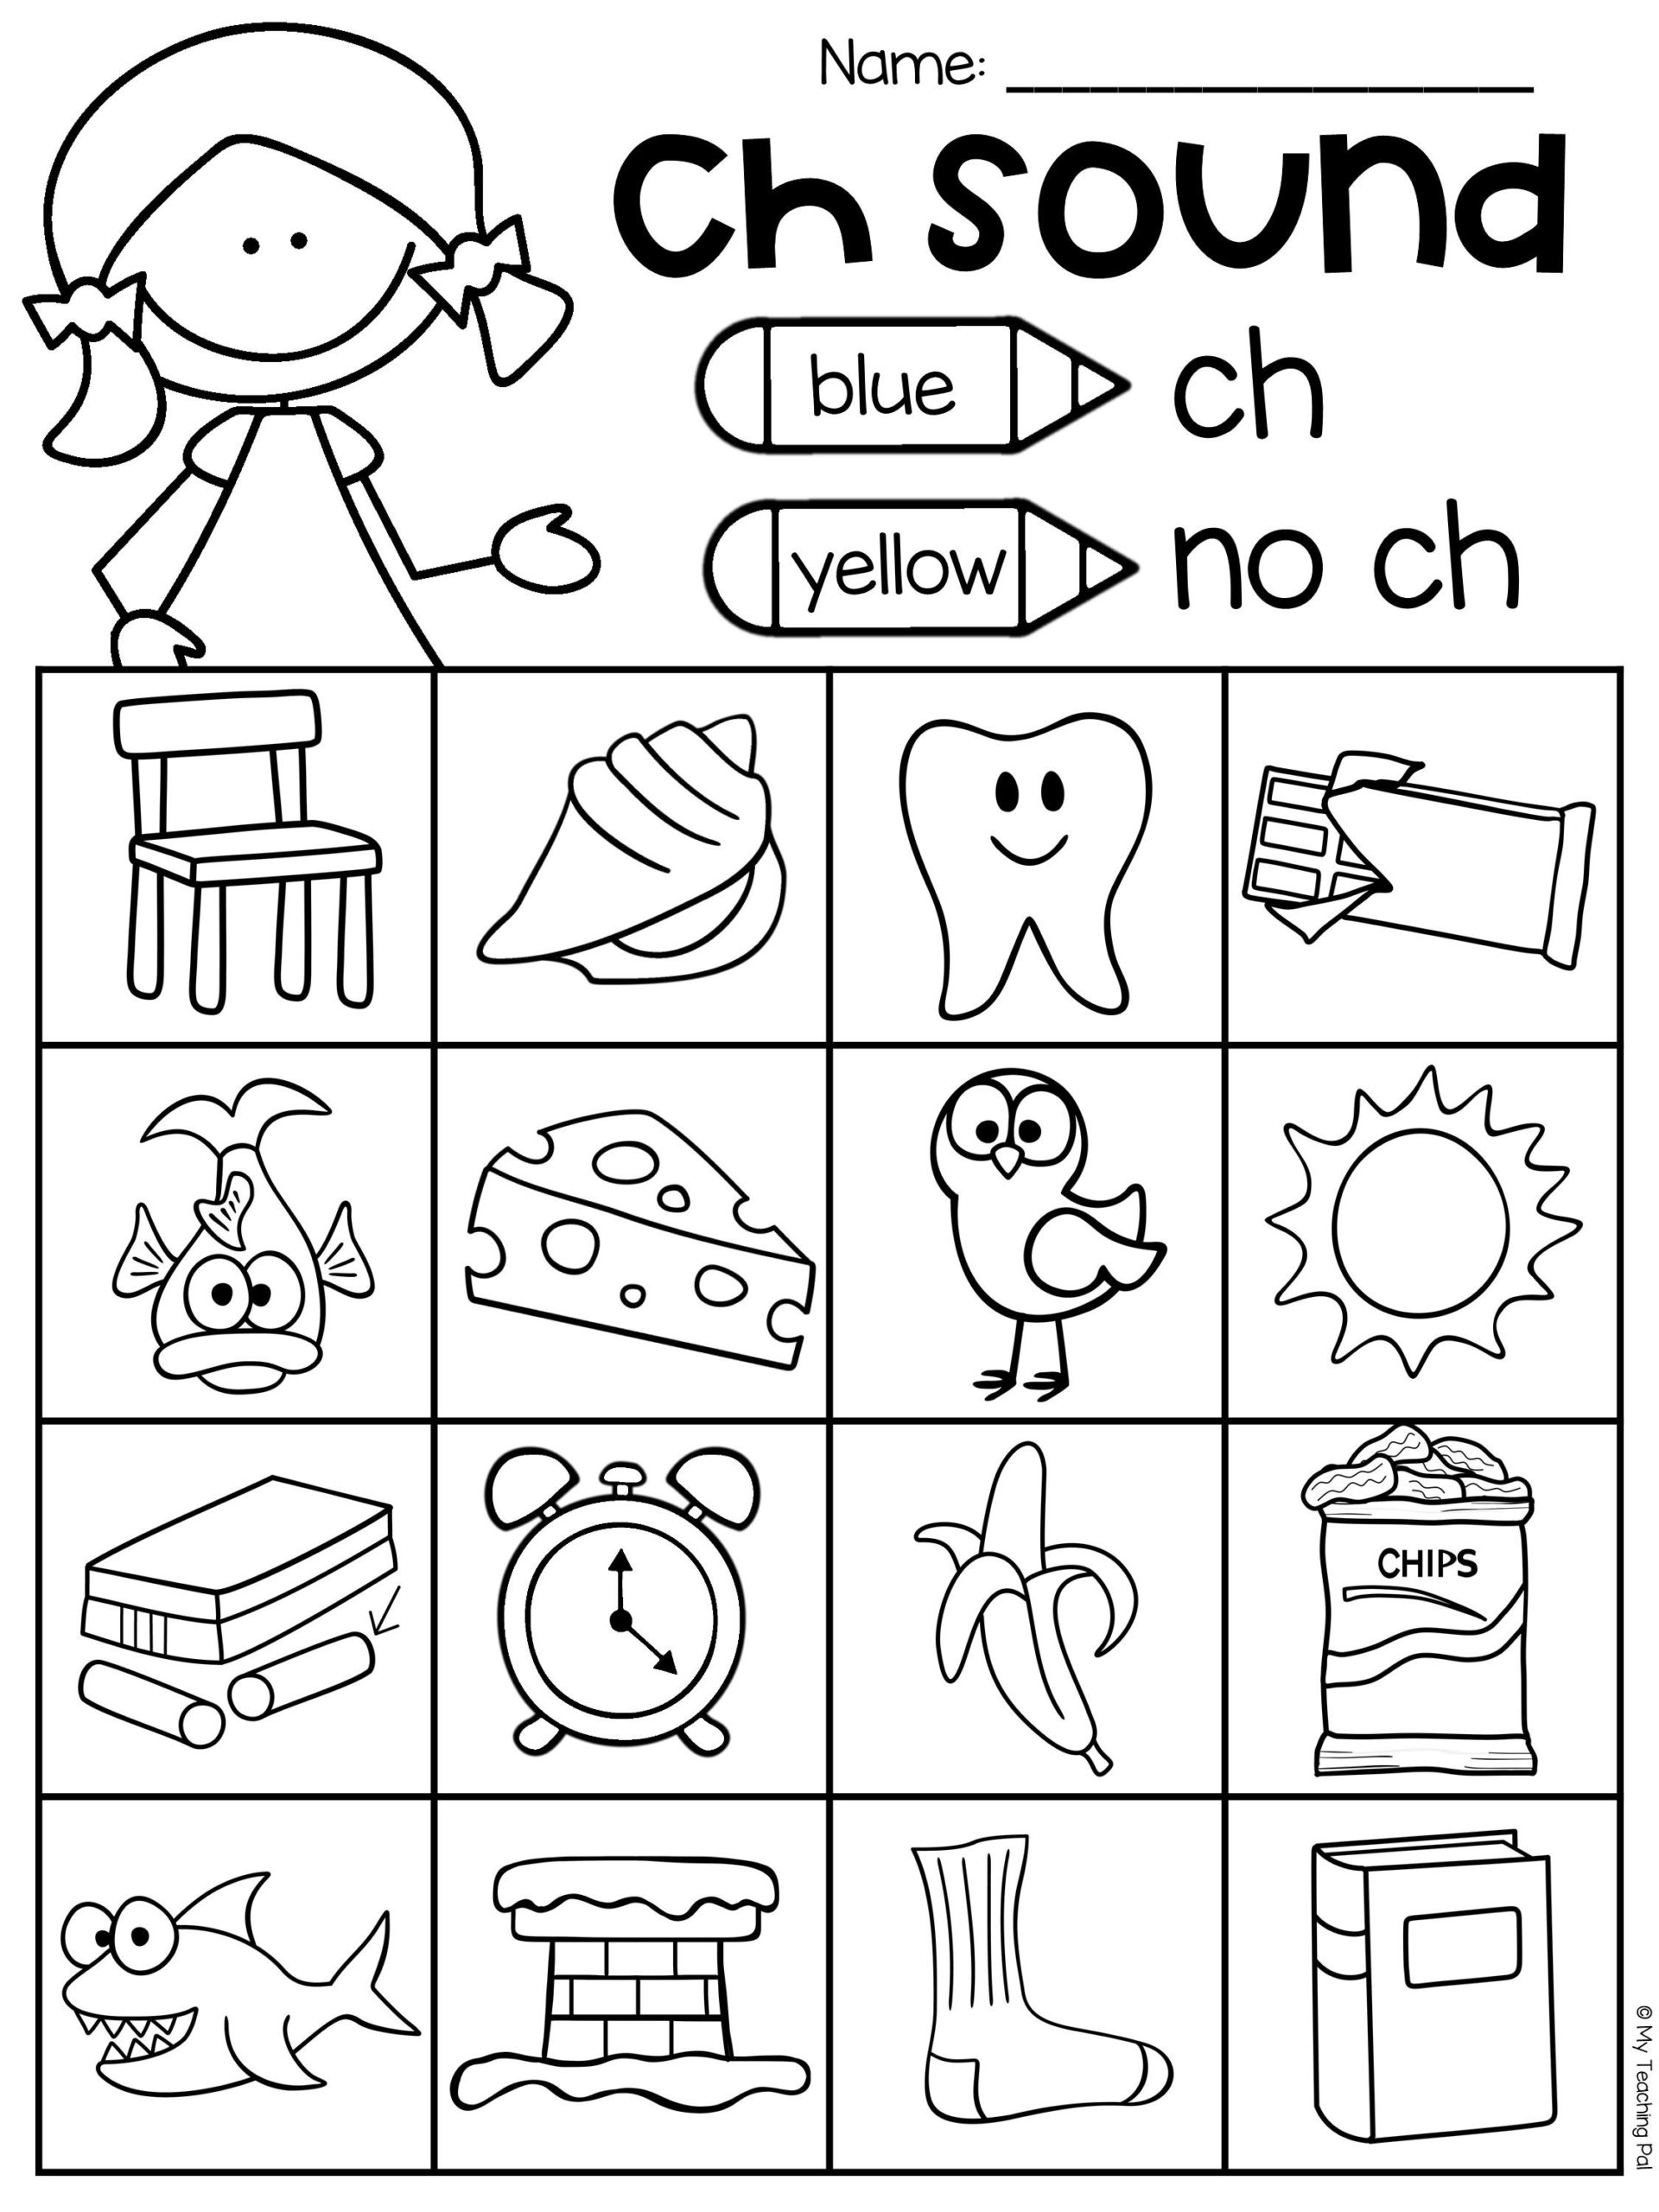 Ch Sh Th Worksheets Kindergarten Worksheets Free Download